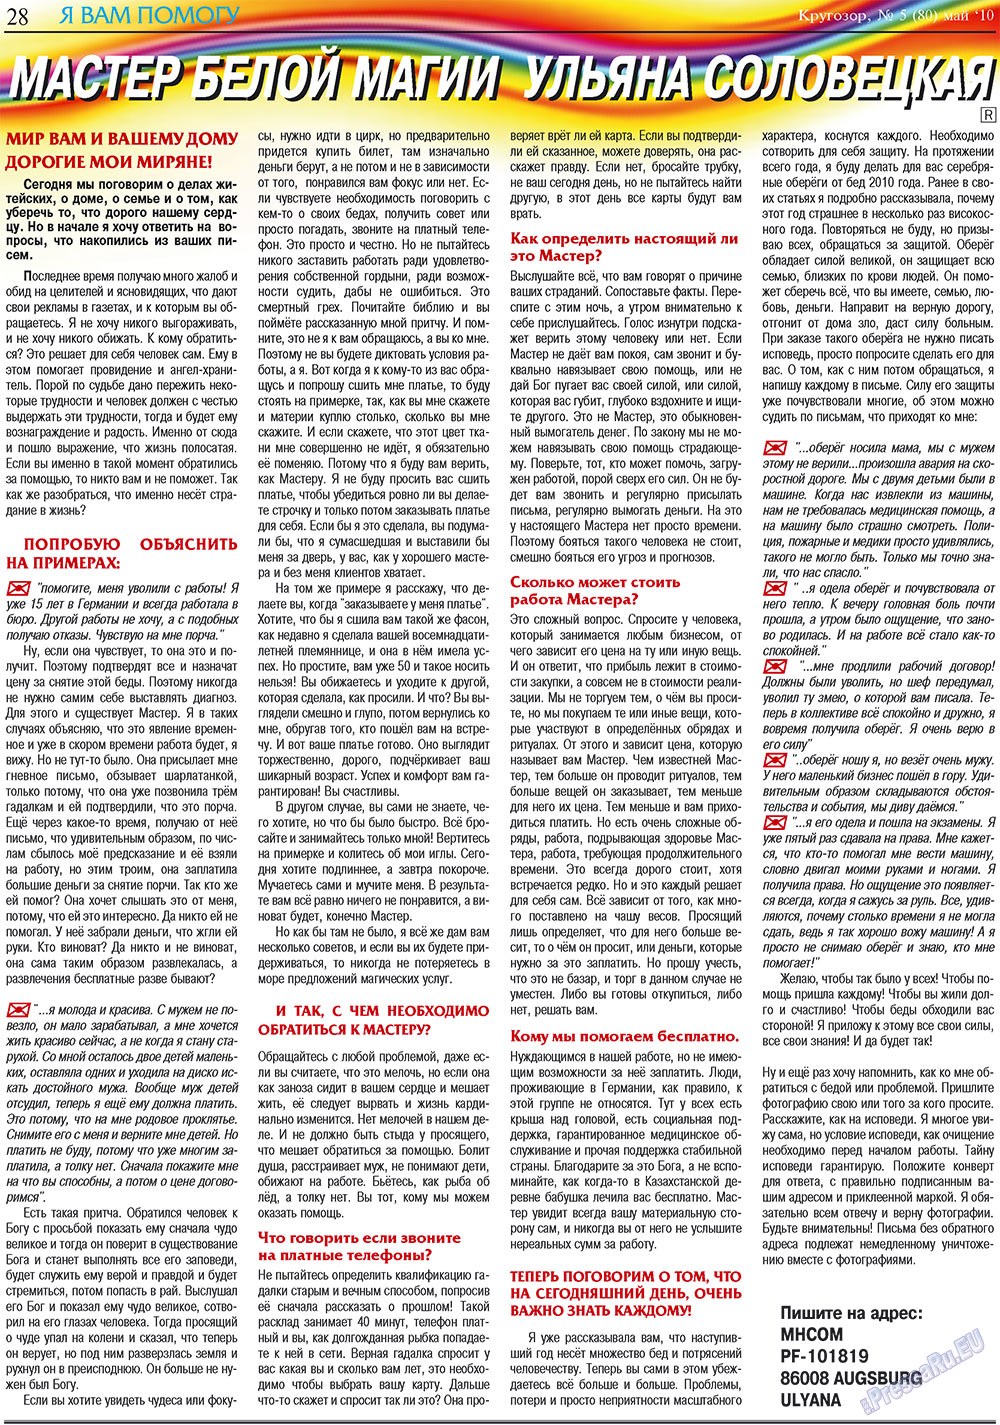 Кругозор плюс!, газета. 2010 №5 стр.52